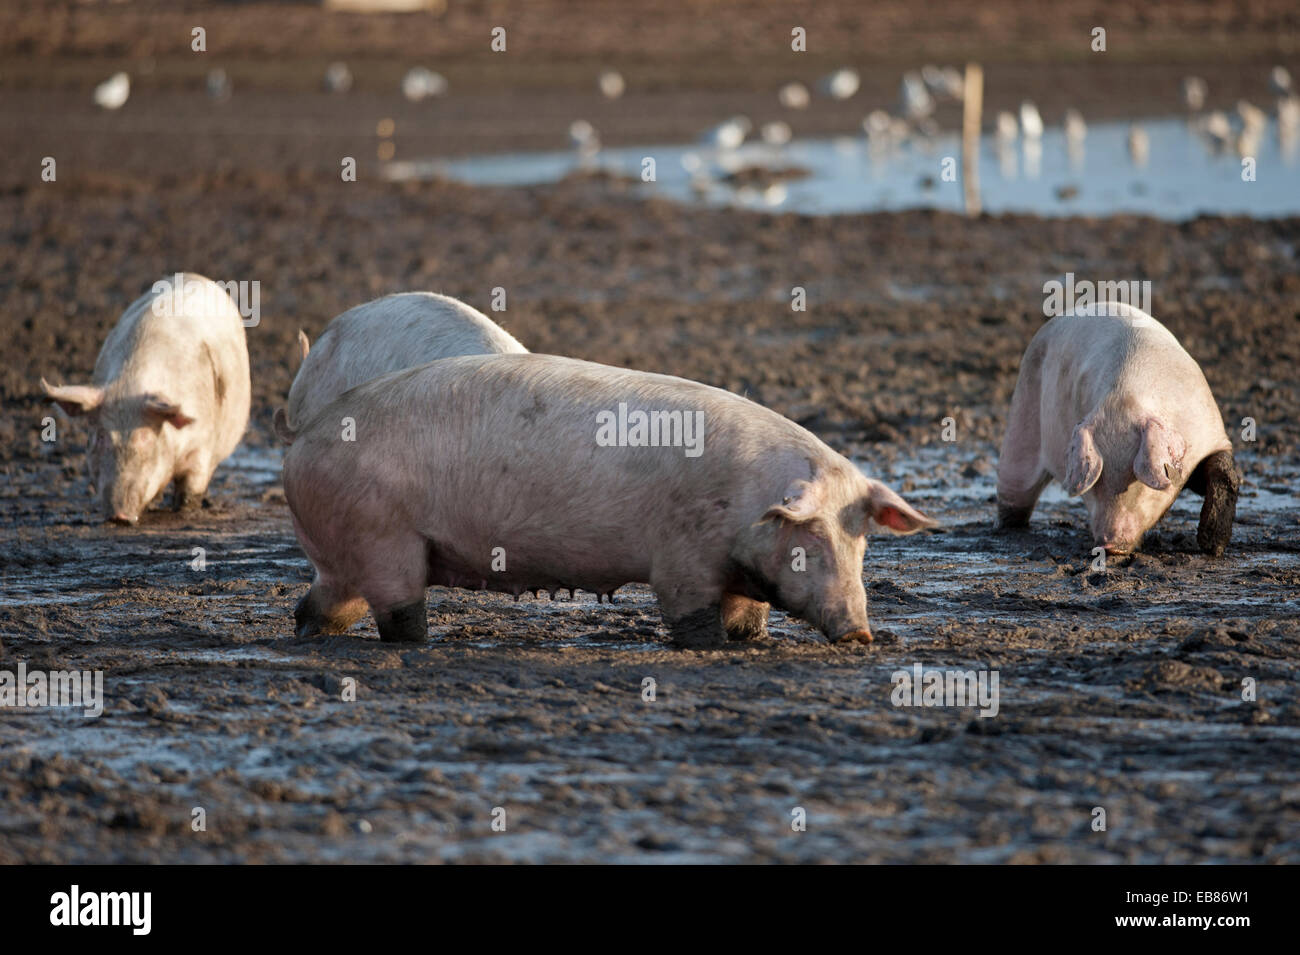 Free-range Pig Farming Industry animali andare per un foraggio in un campo fangoso, a Lossiemouth, murene. La Scozia. SCO 9230. Foto Stock